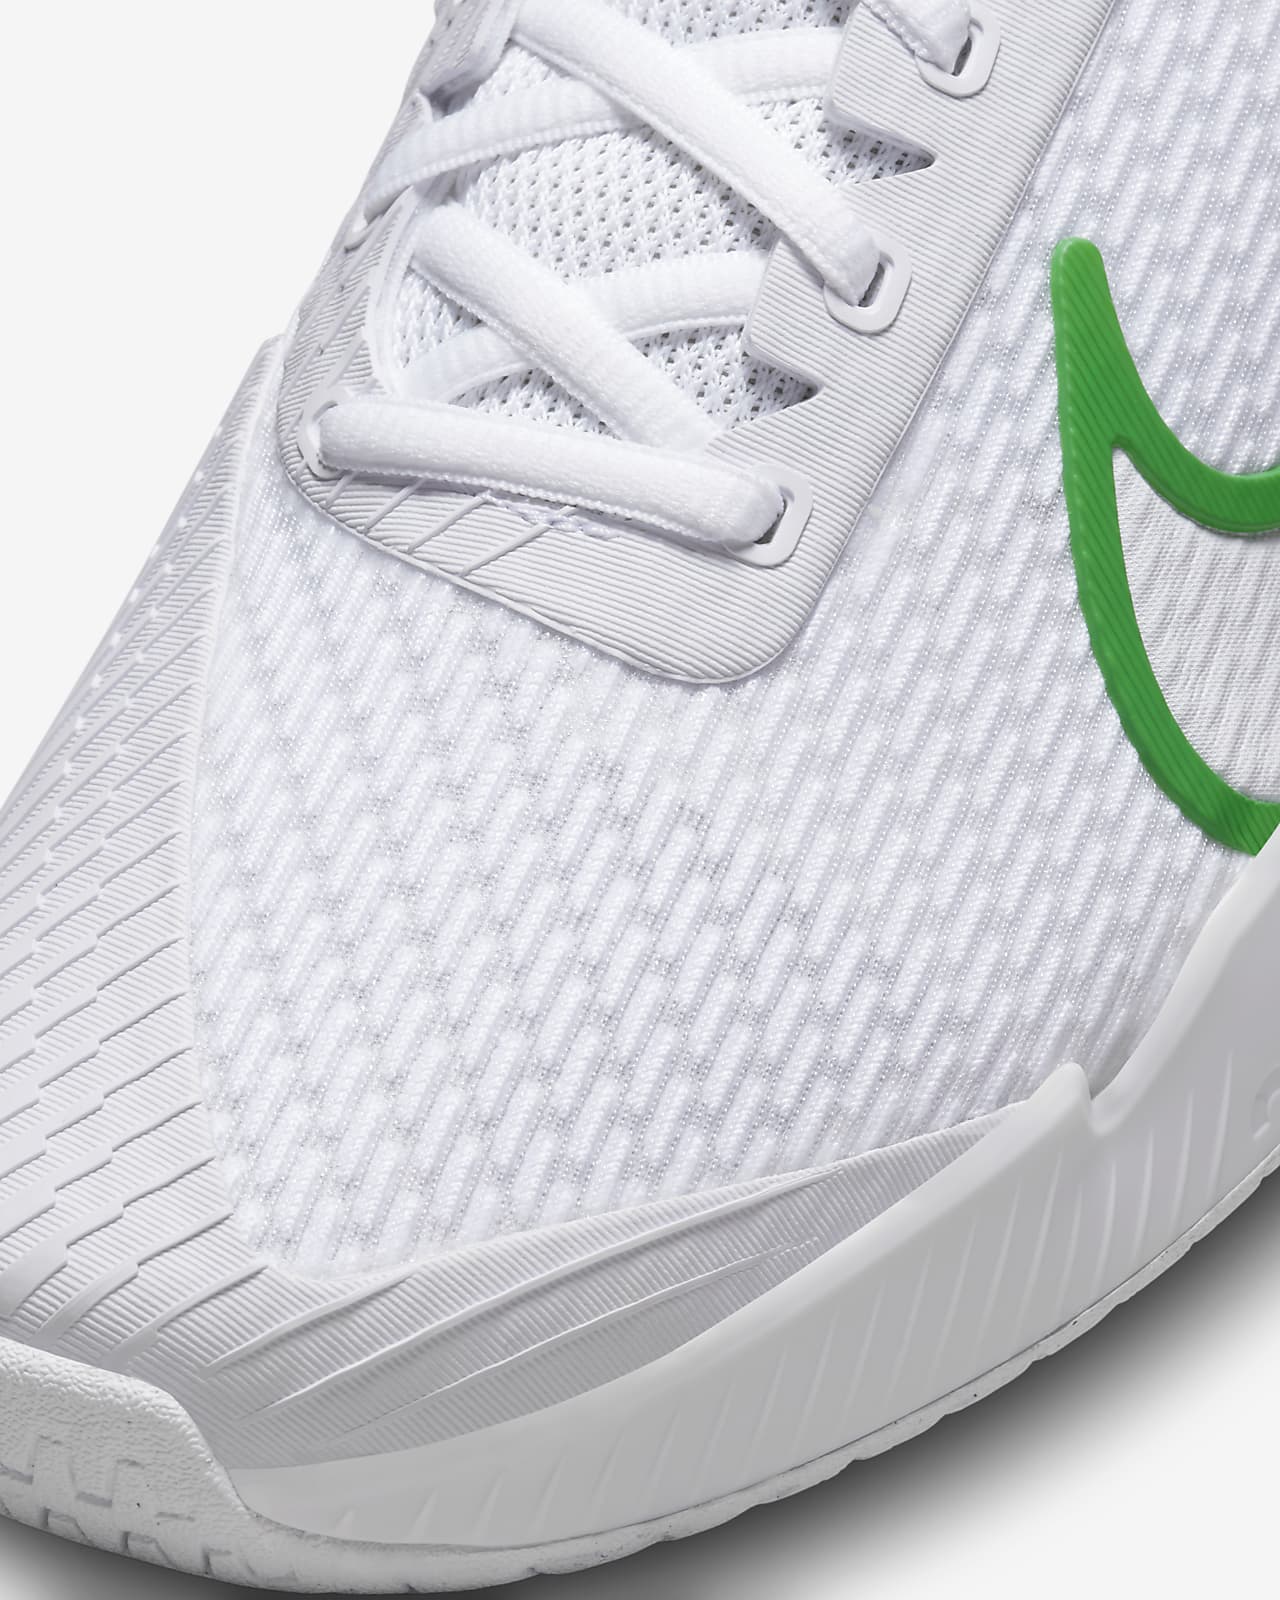 NikeCourt Air Zoom Vapor Pro Men's Hard Tennis Shoes. AU